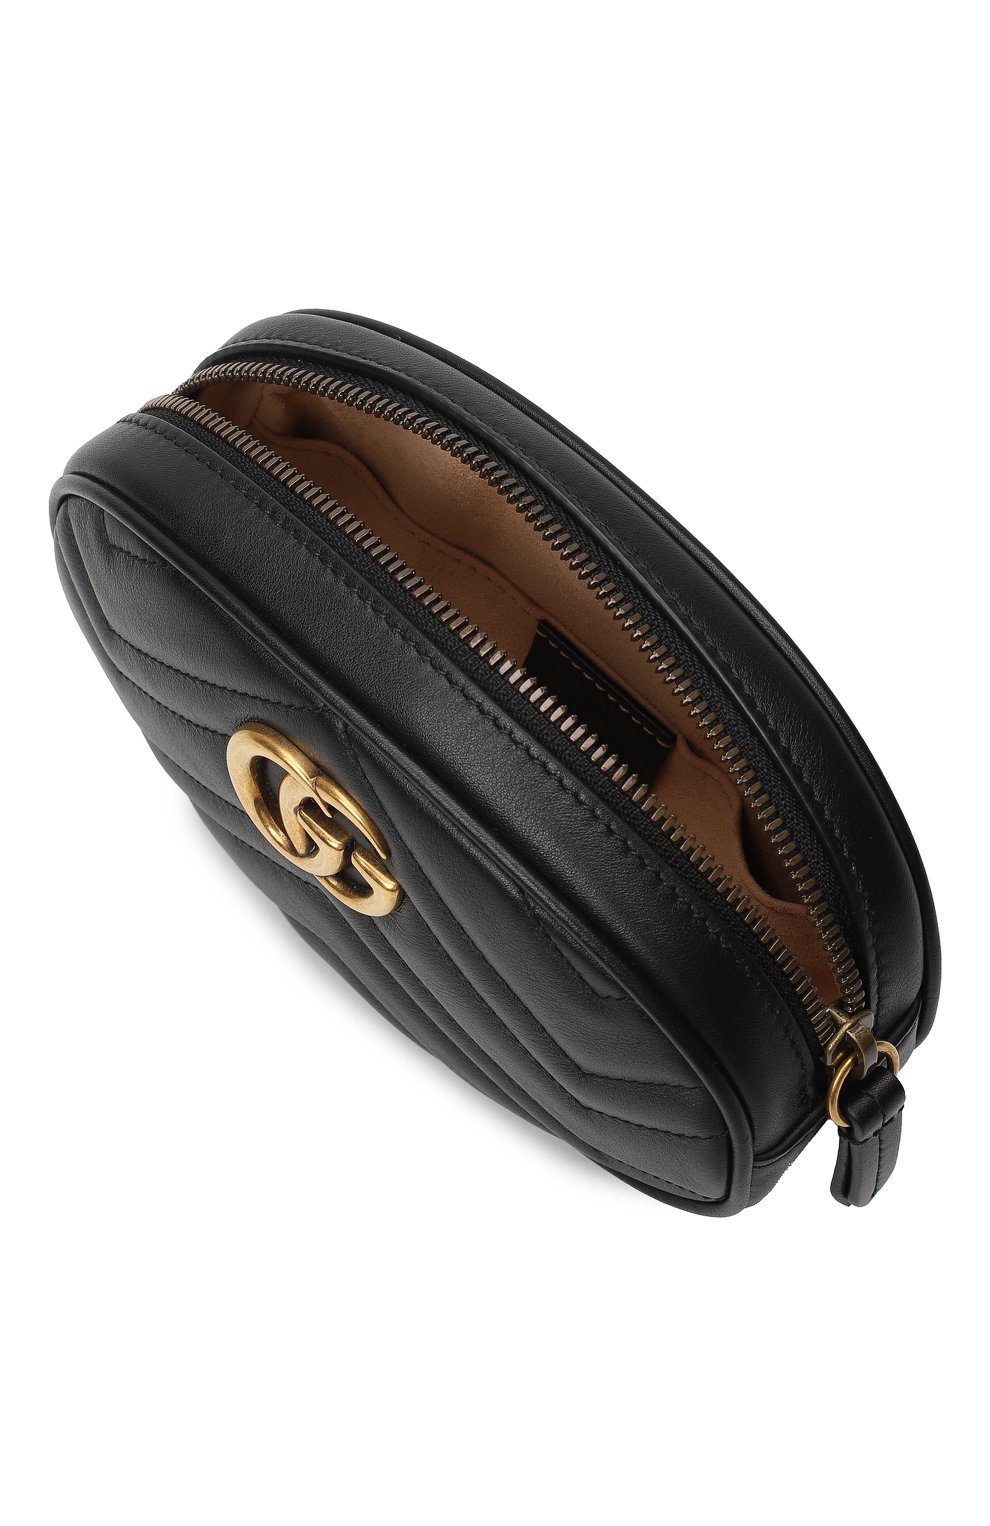 Поясная сумка GG Marmont | Gucci | Чёрный - 7